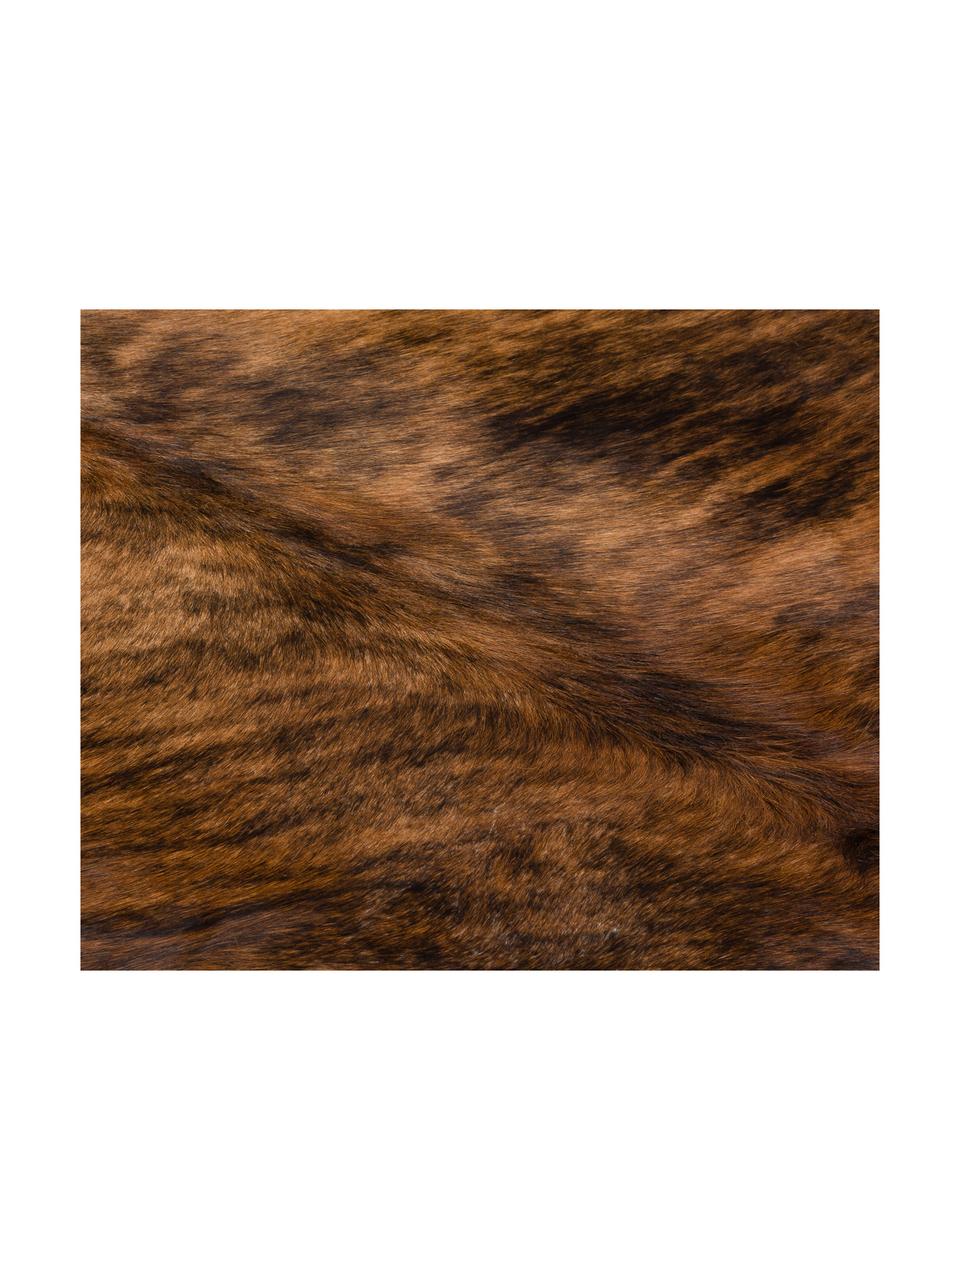 Dywan ze skóry bydlęcej Leo, Skóra bydlęca, Brązowy, tygrysi, Unikatowa skóra bydlęca 935, 160 x 180 cm